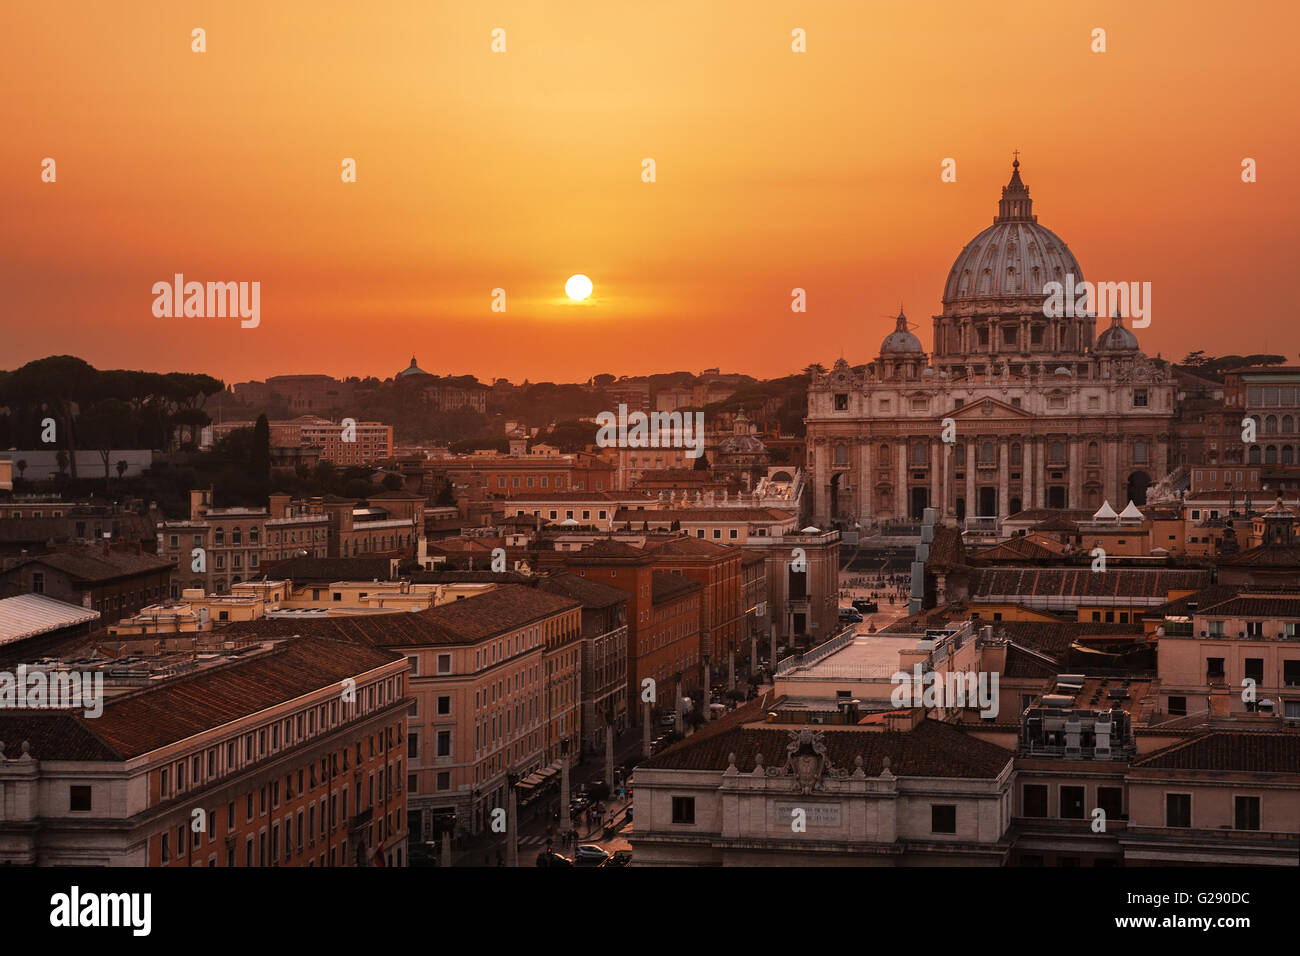 Schöner Sonnenuntergang über Rom (Italien) und Vatikanstadt. Petersdom im Hintergrund. Stockfoto